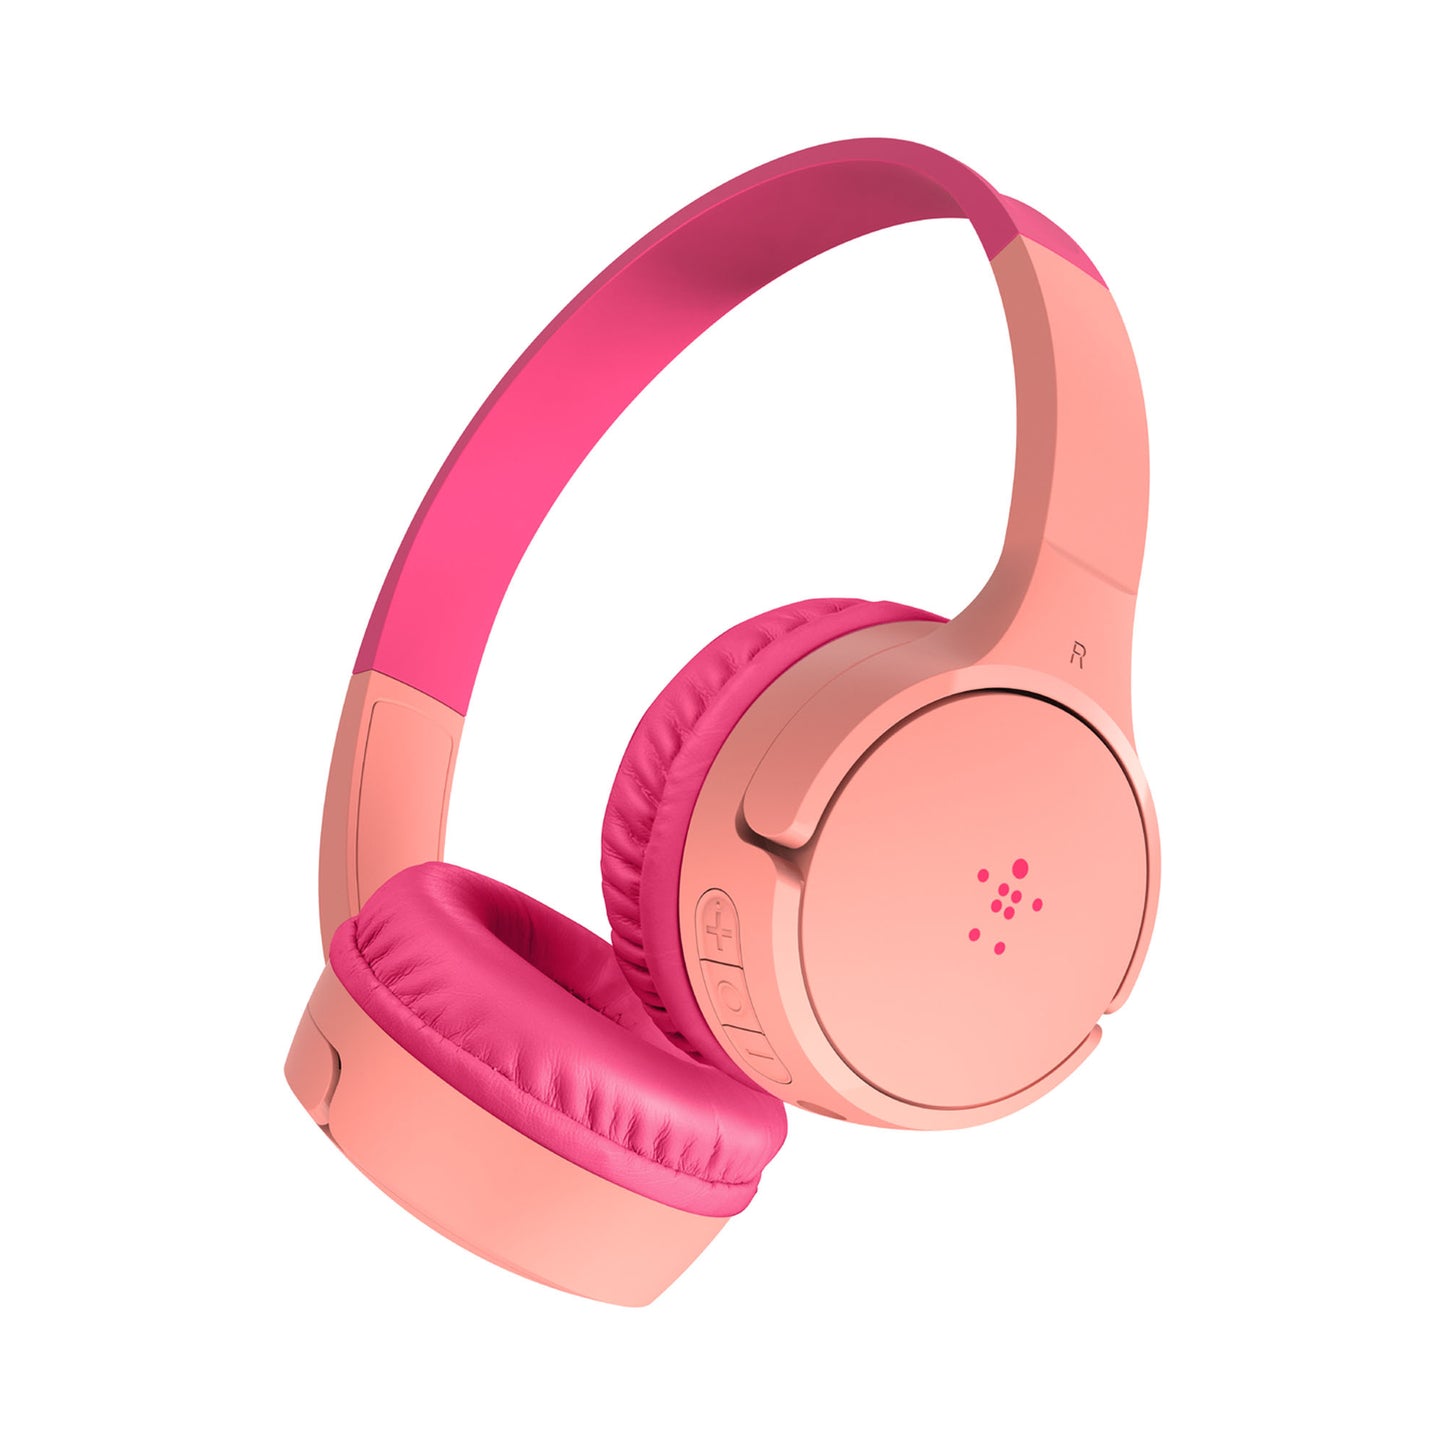 BELKIN Soundform Mini Wireless On-Ear Headphones For Kids - Pink